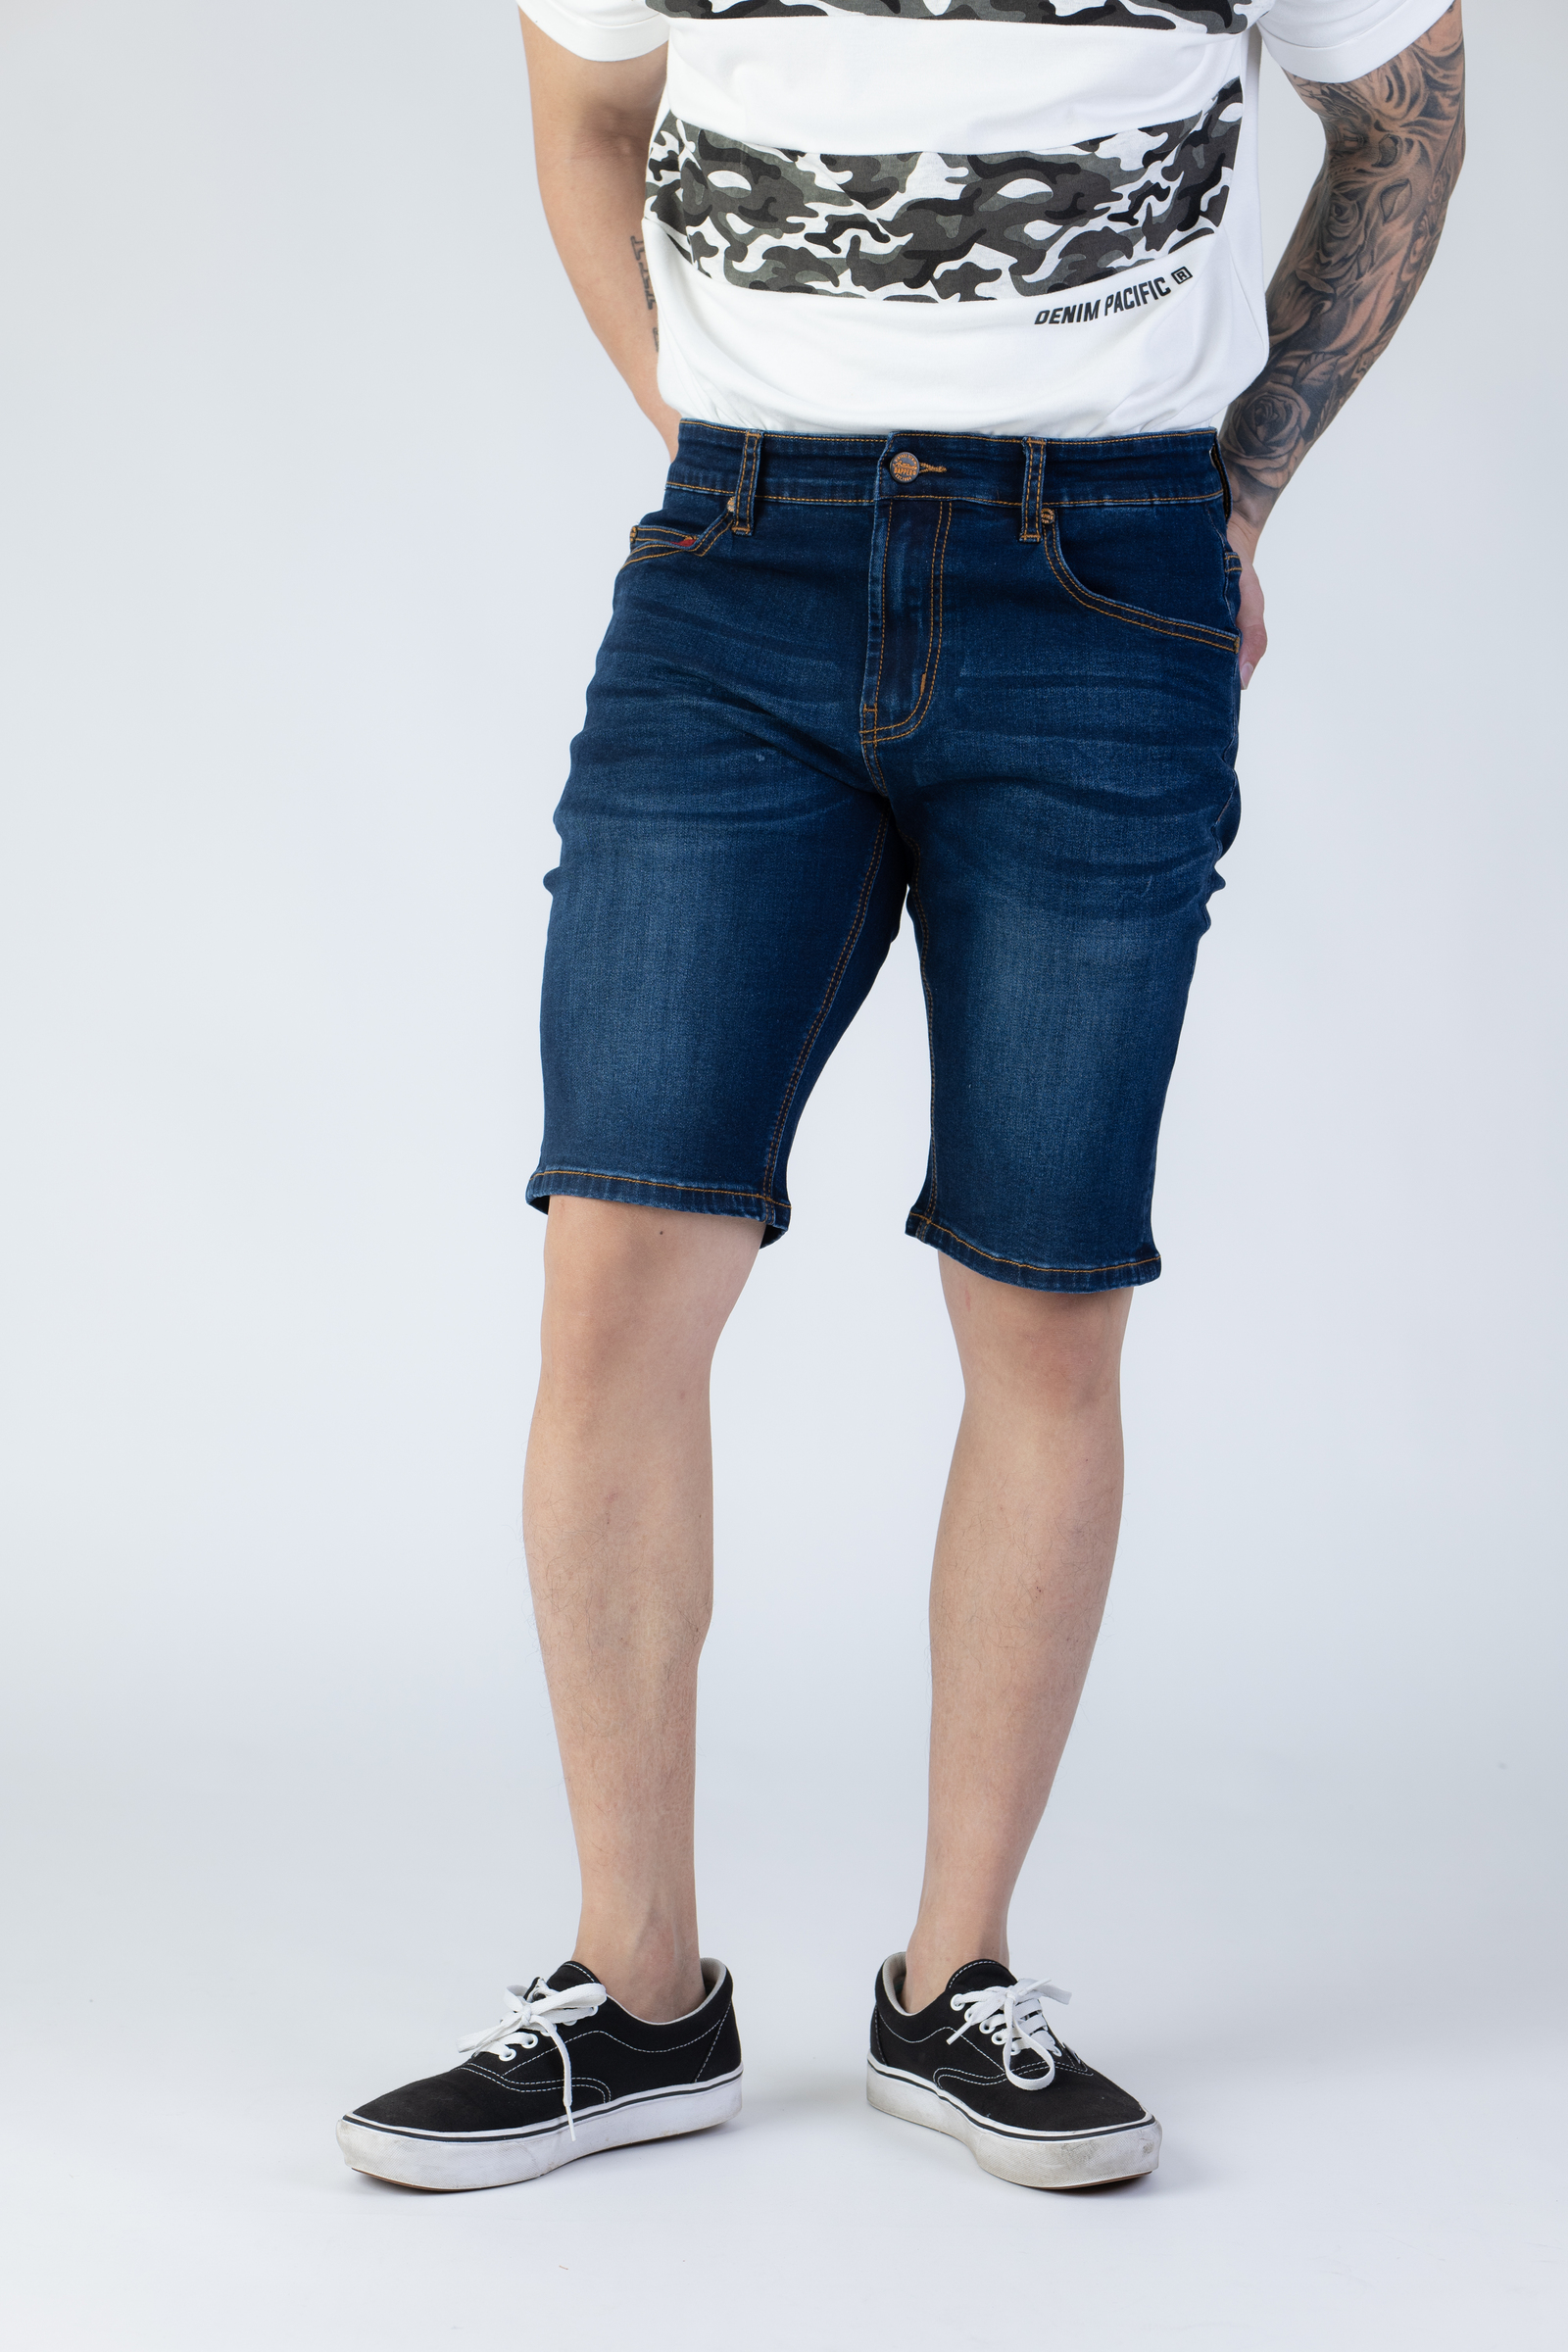 work pants for men Mens Casual Shorts Spring Pocket Sports Summer  Bodybuilding Denim Short Pants Jeans  Walmartcom